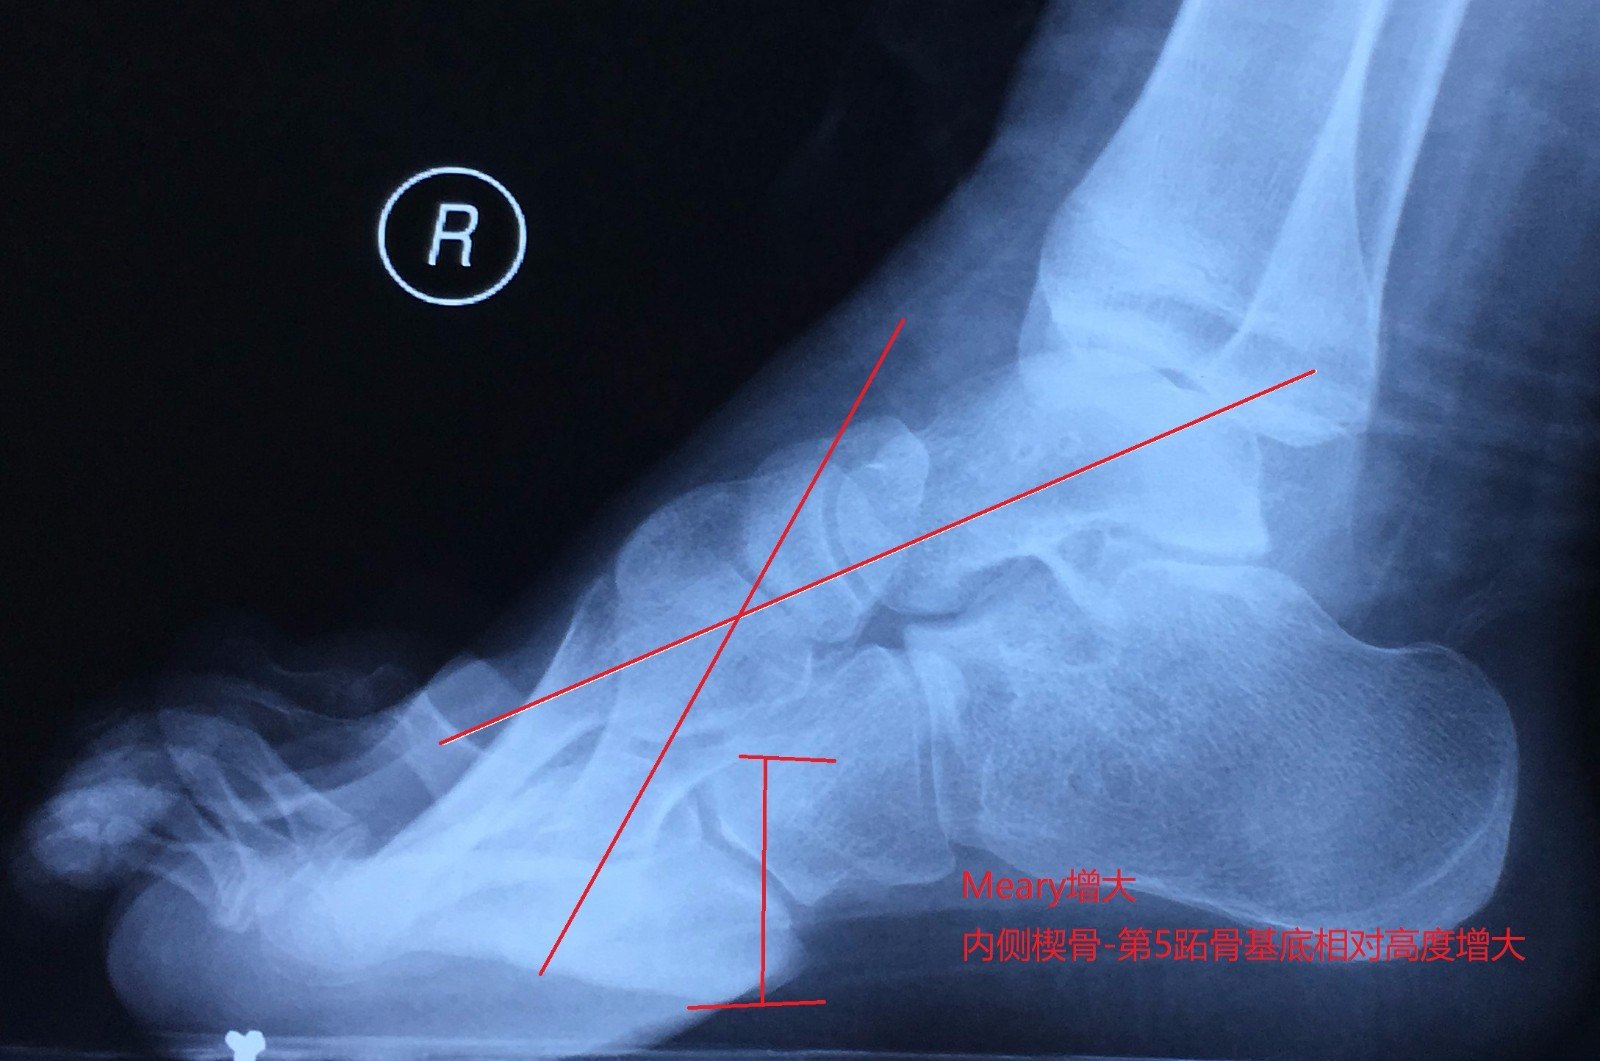 辅助检查:meary角增大,内侧楔骨-第5跖骨基底相对高度增大.